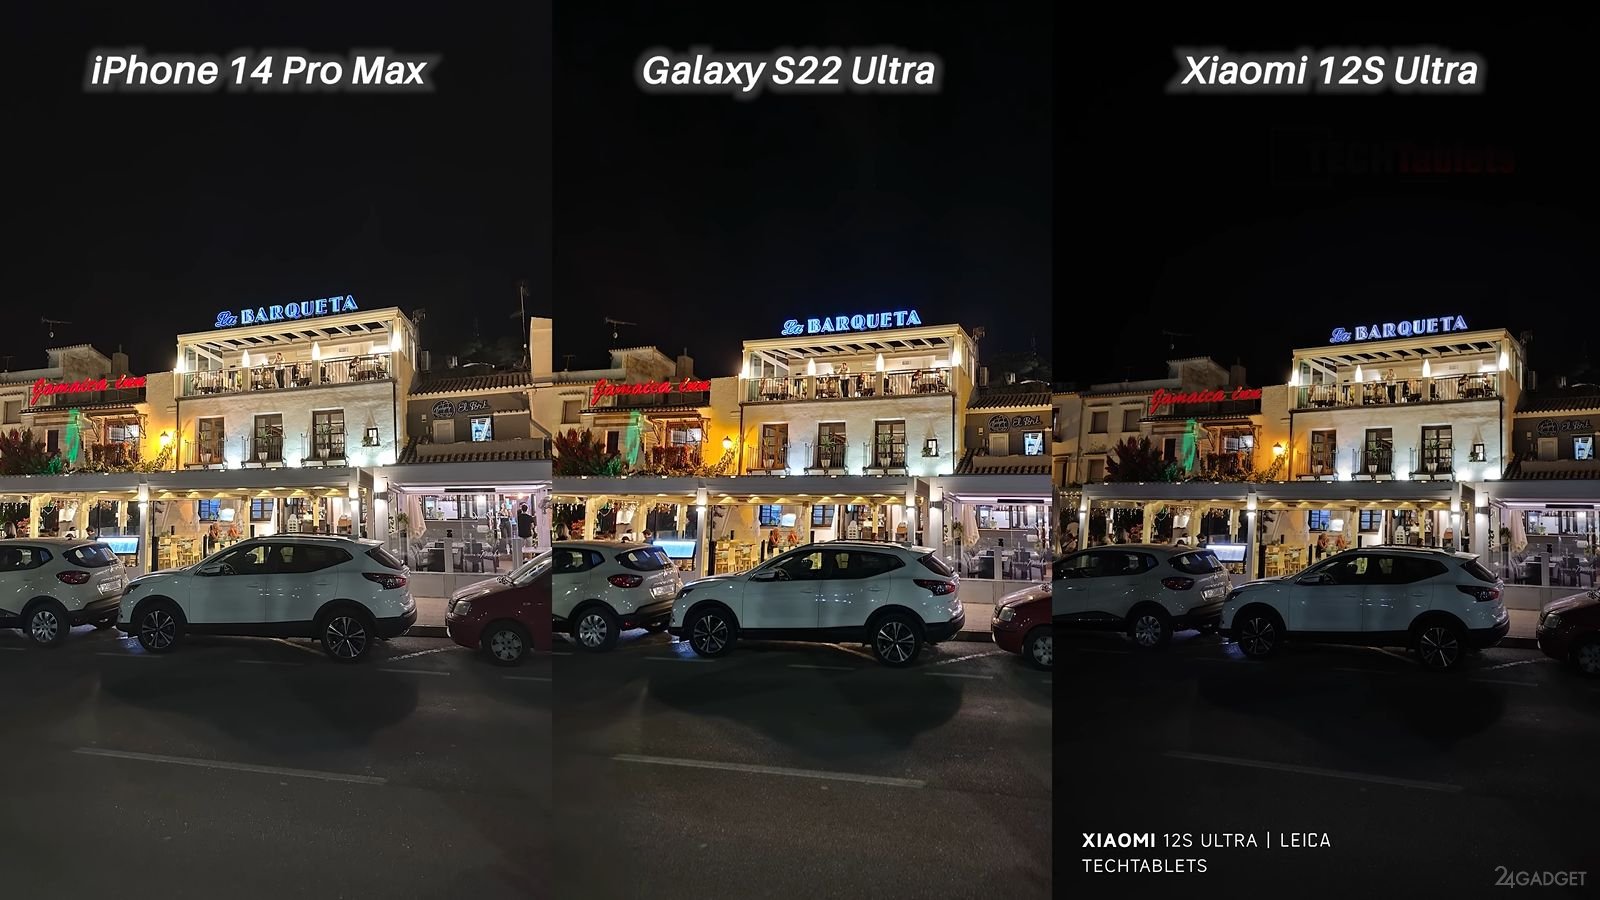 сравнение фото iphone и xiaomi